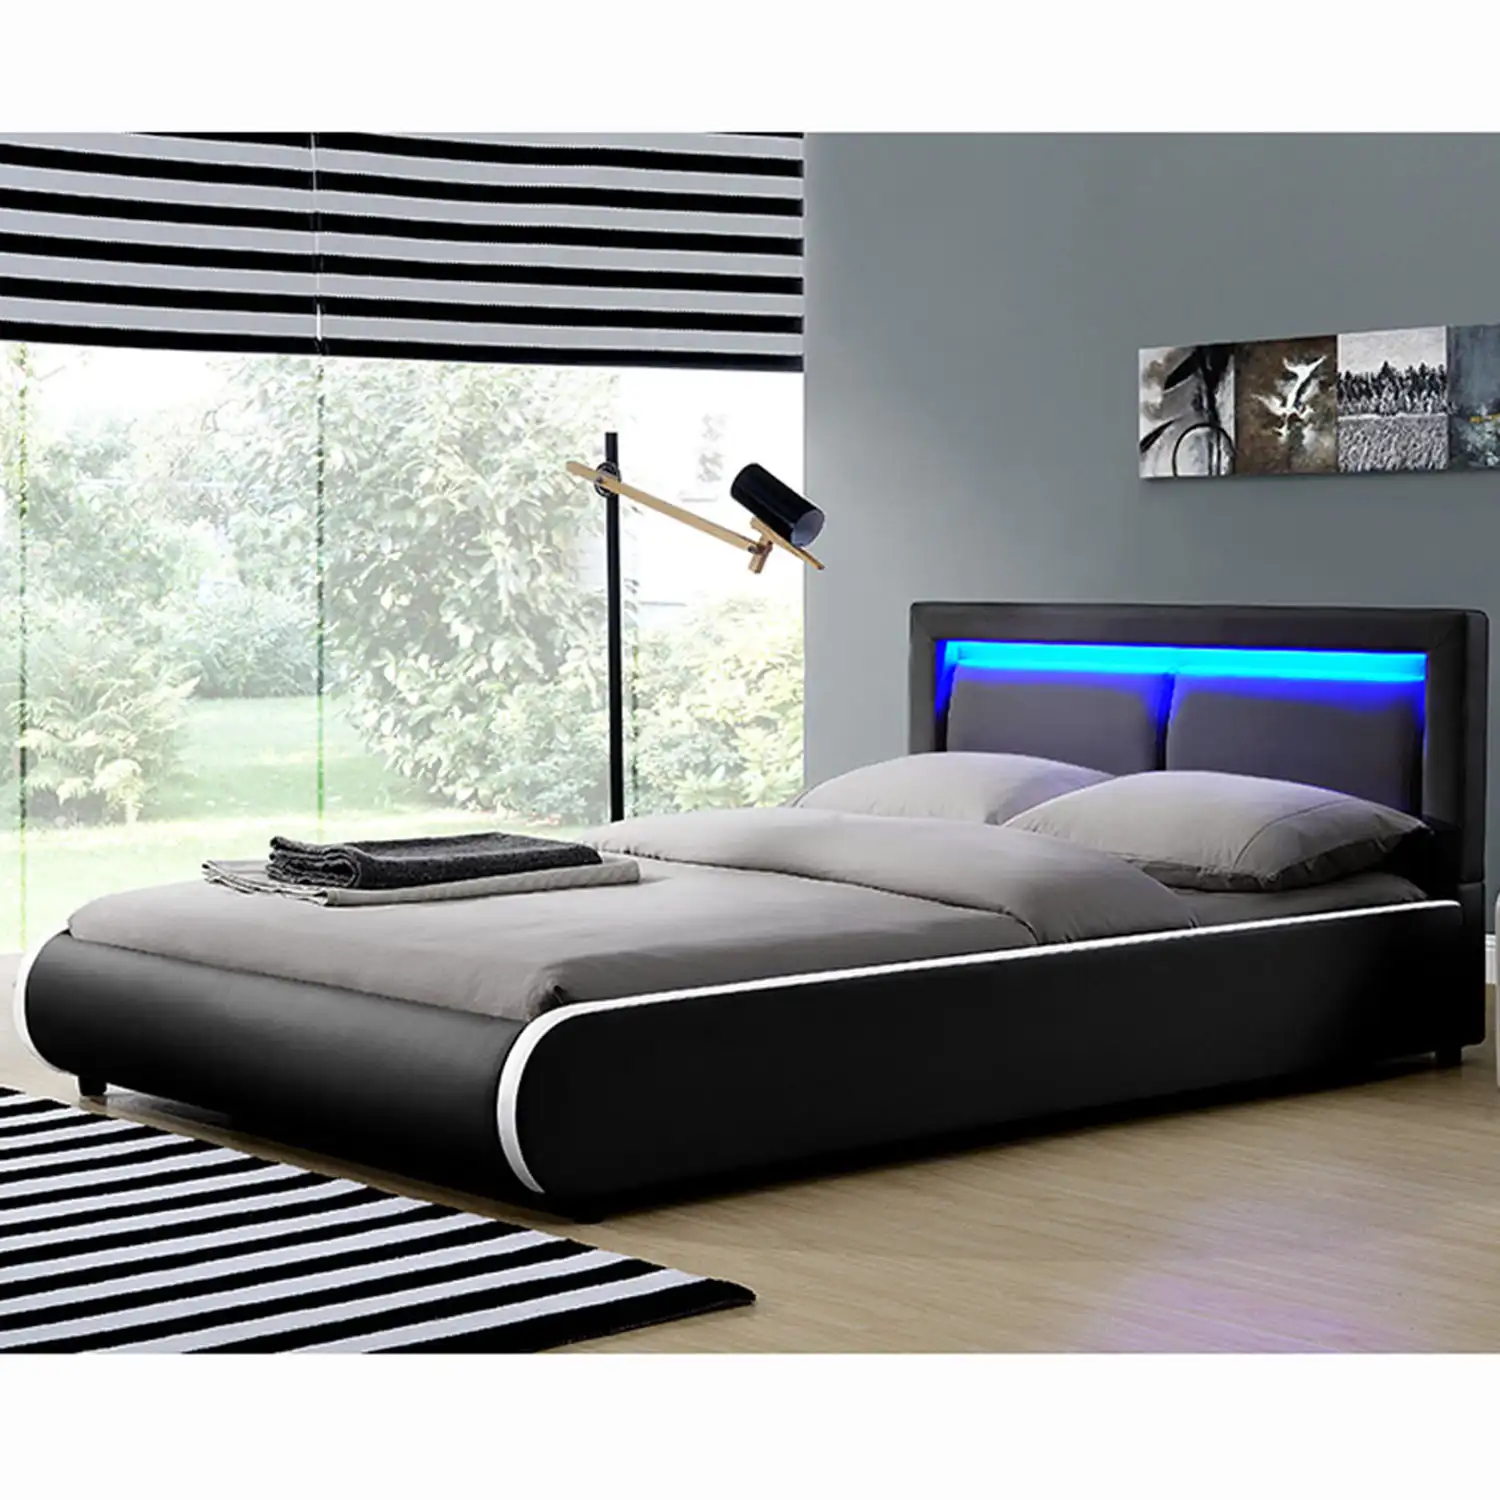 Современная кровать королевского размера со светодиодной подсветкой, белая кровать из искусственной кожи с мягкой обивкой, кровать большого размера, мебель для спальни